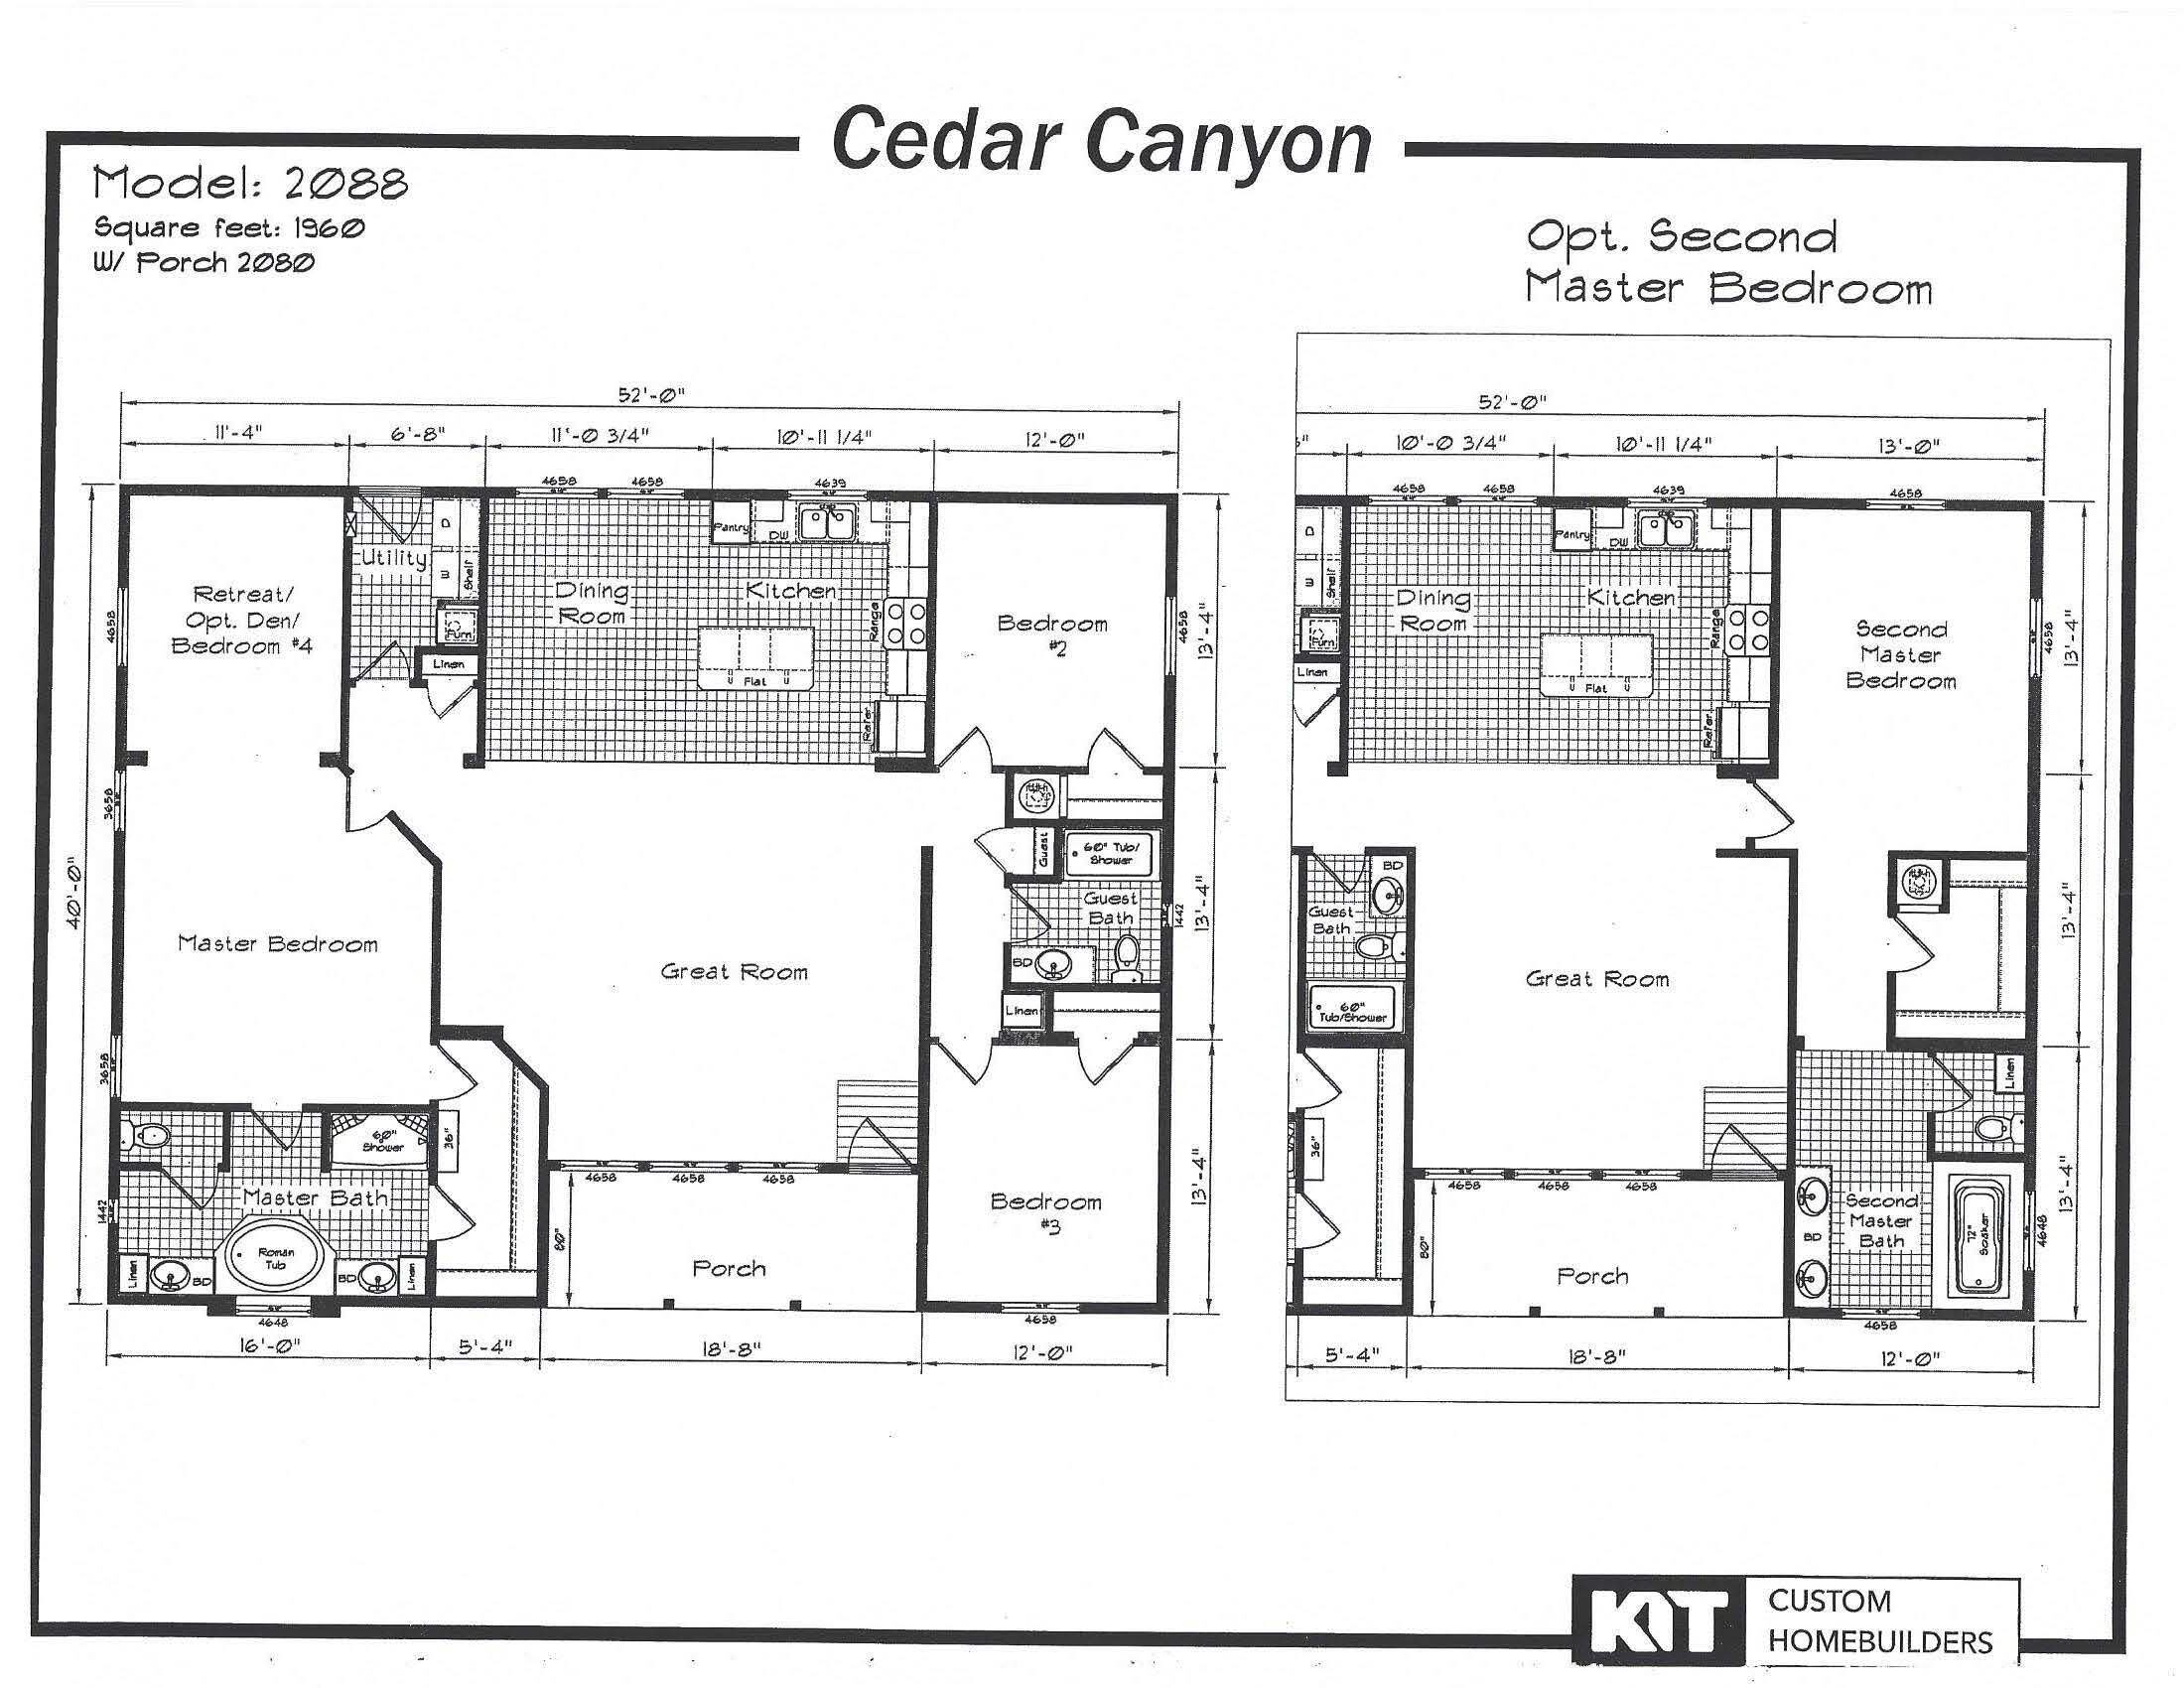 Cedar Canyon 2088 three section home.